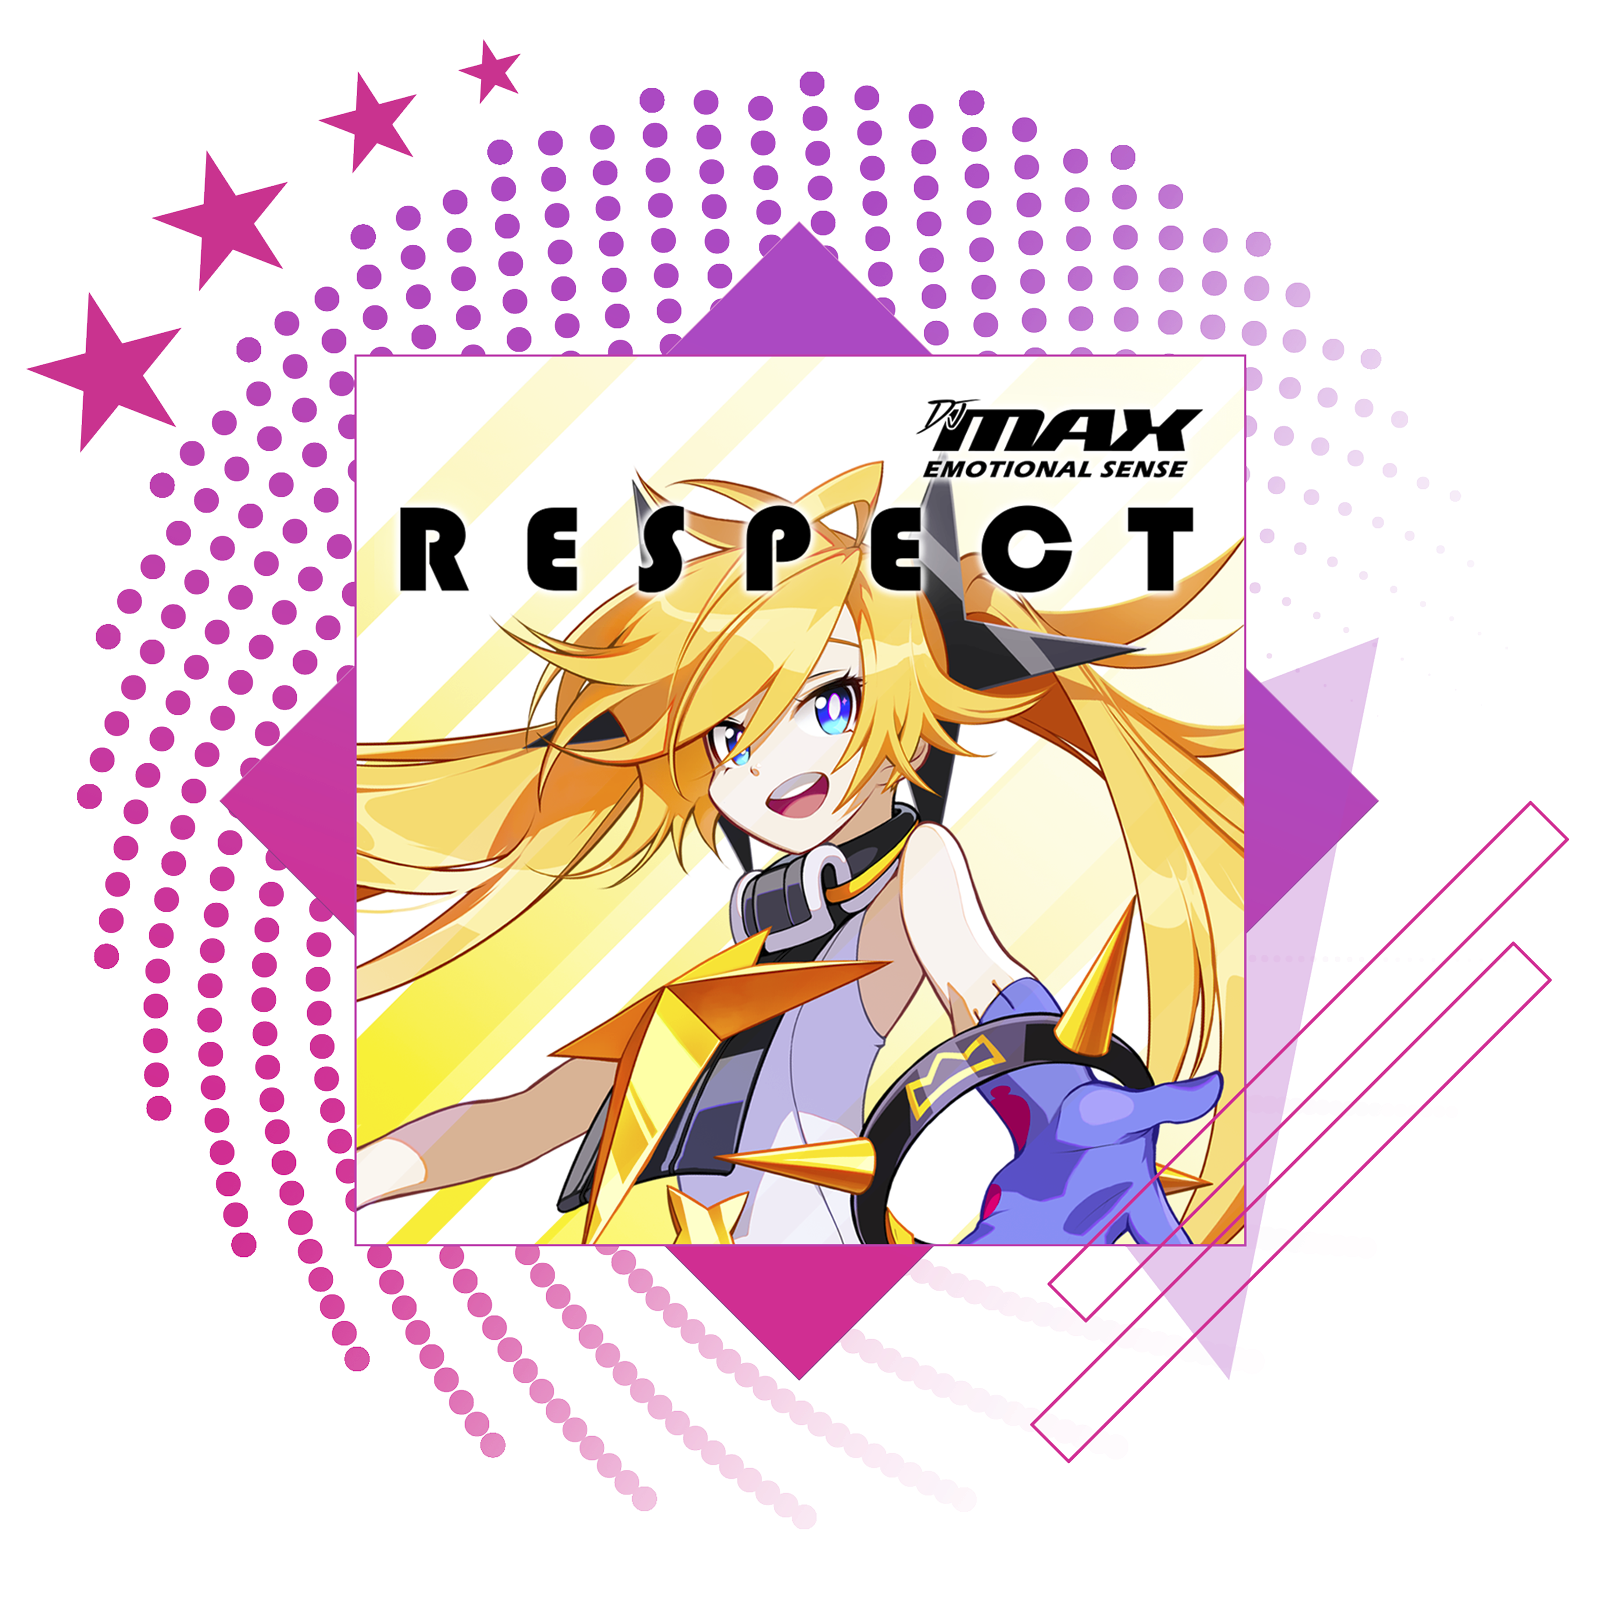 最佳节奏游戏的特色图像，展示《DJMAX Respect》的主题宣传海报。